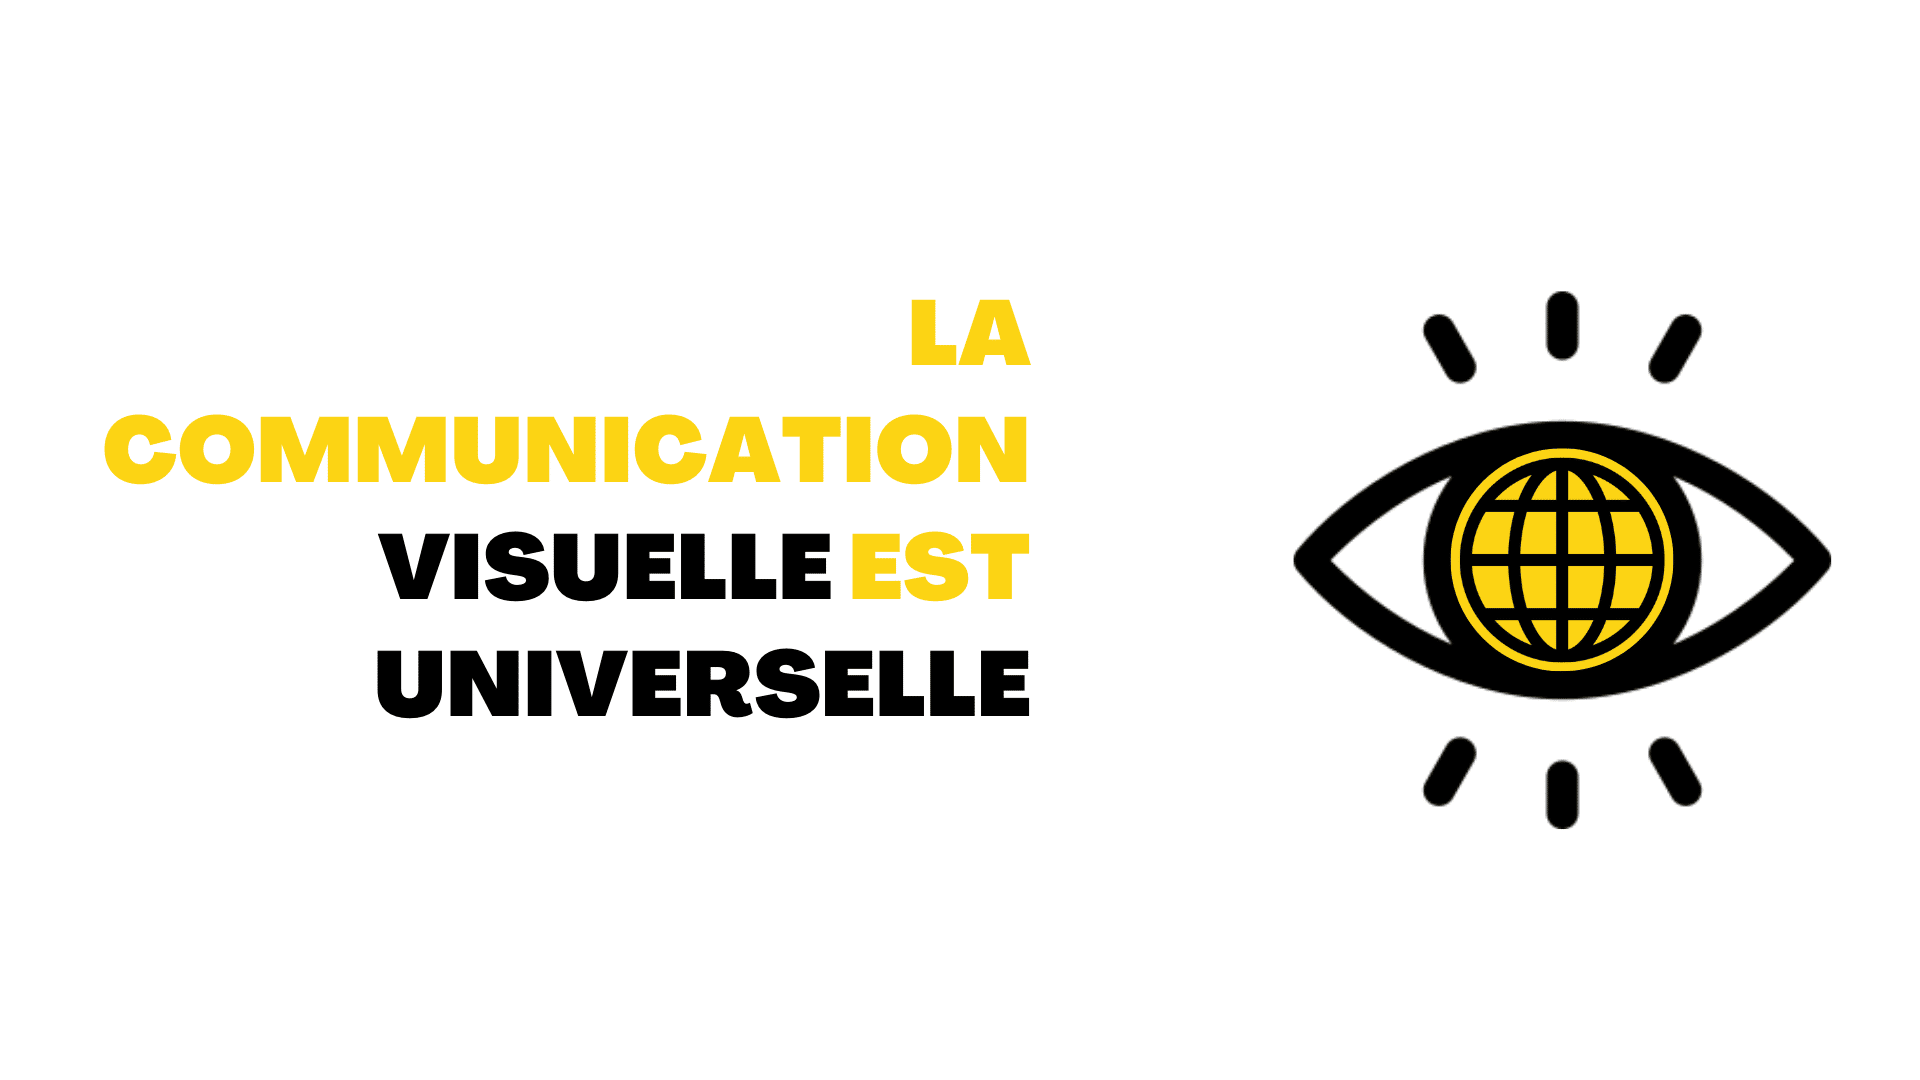 Communication visuelle universelle